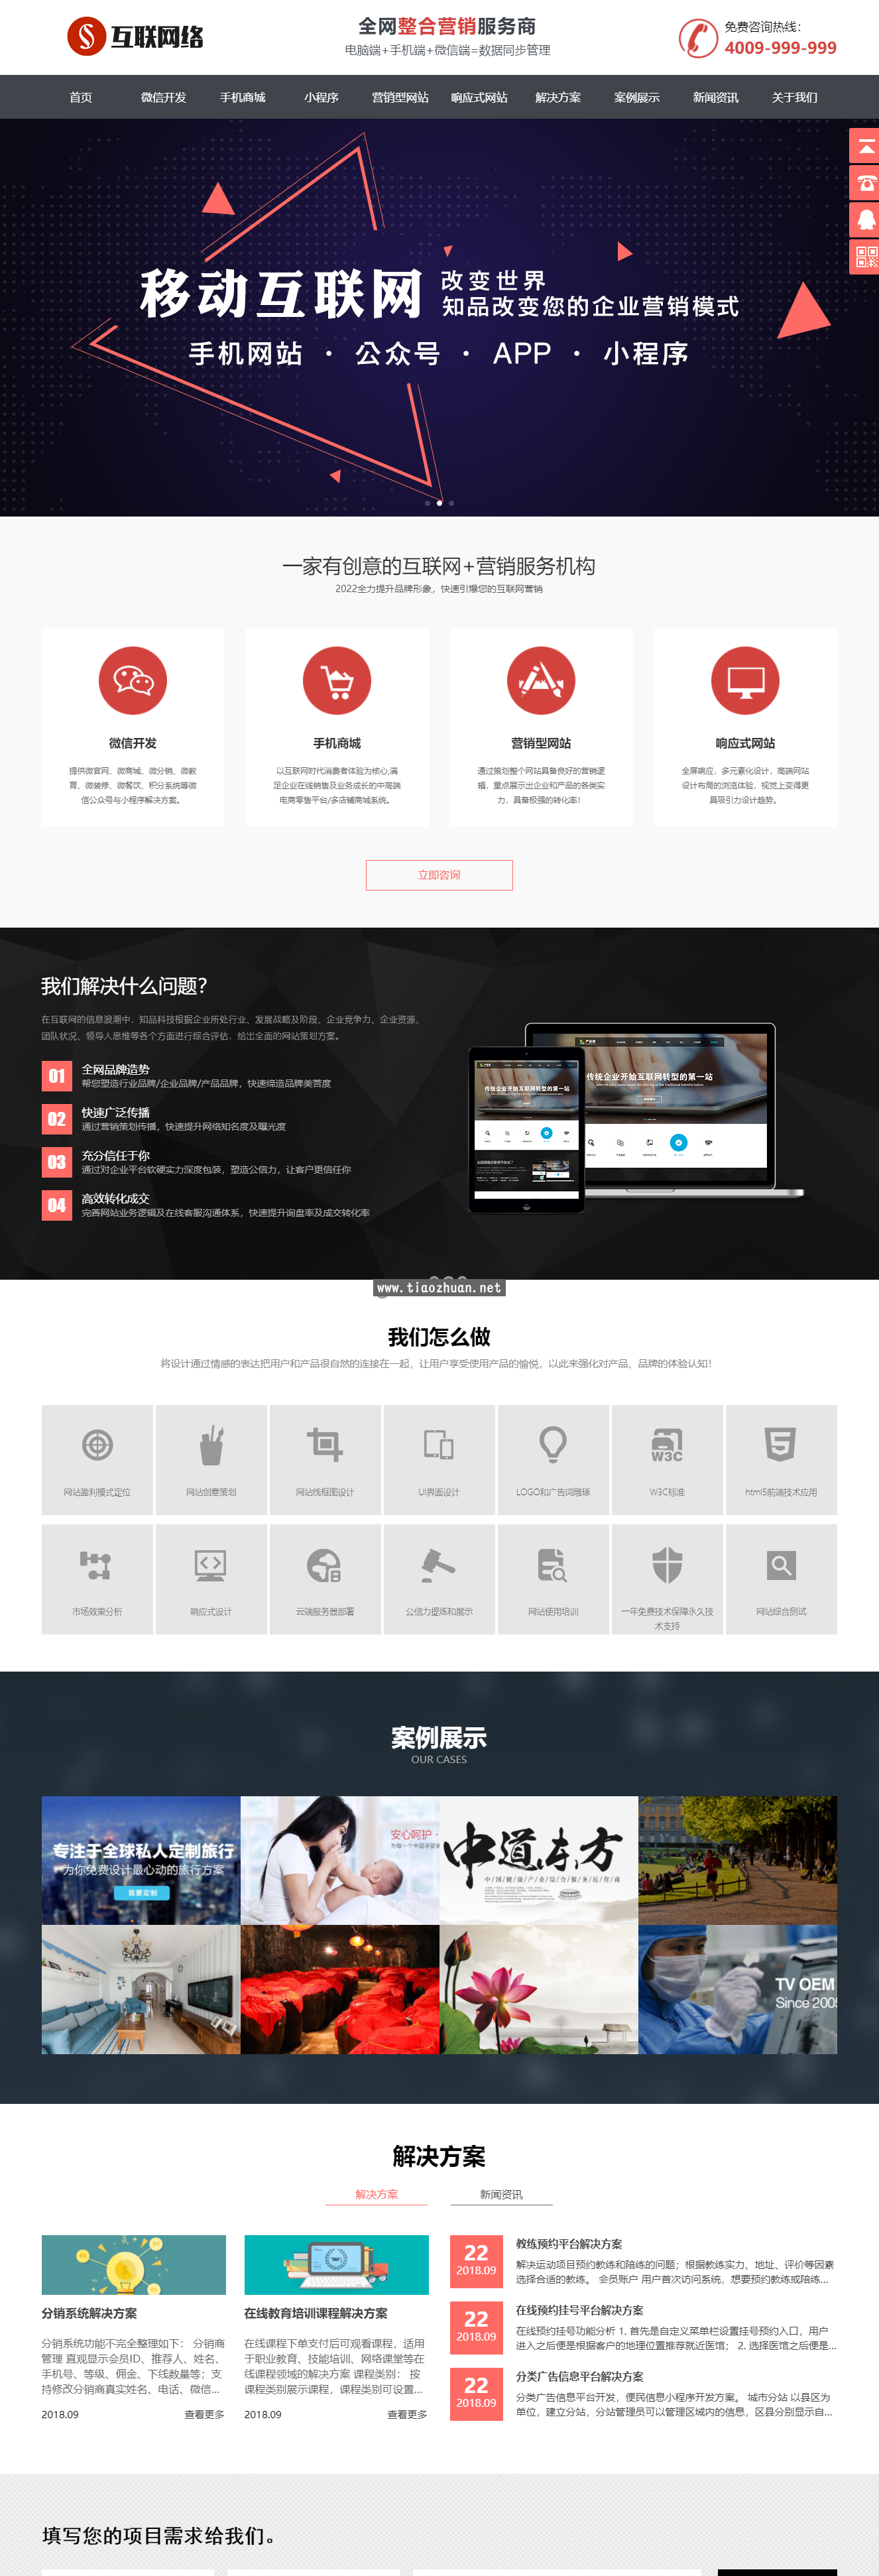 易优cms营销网站定制公司网站模板